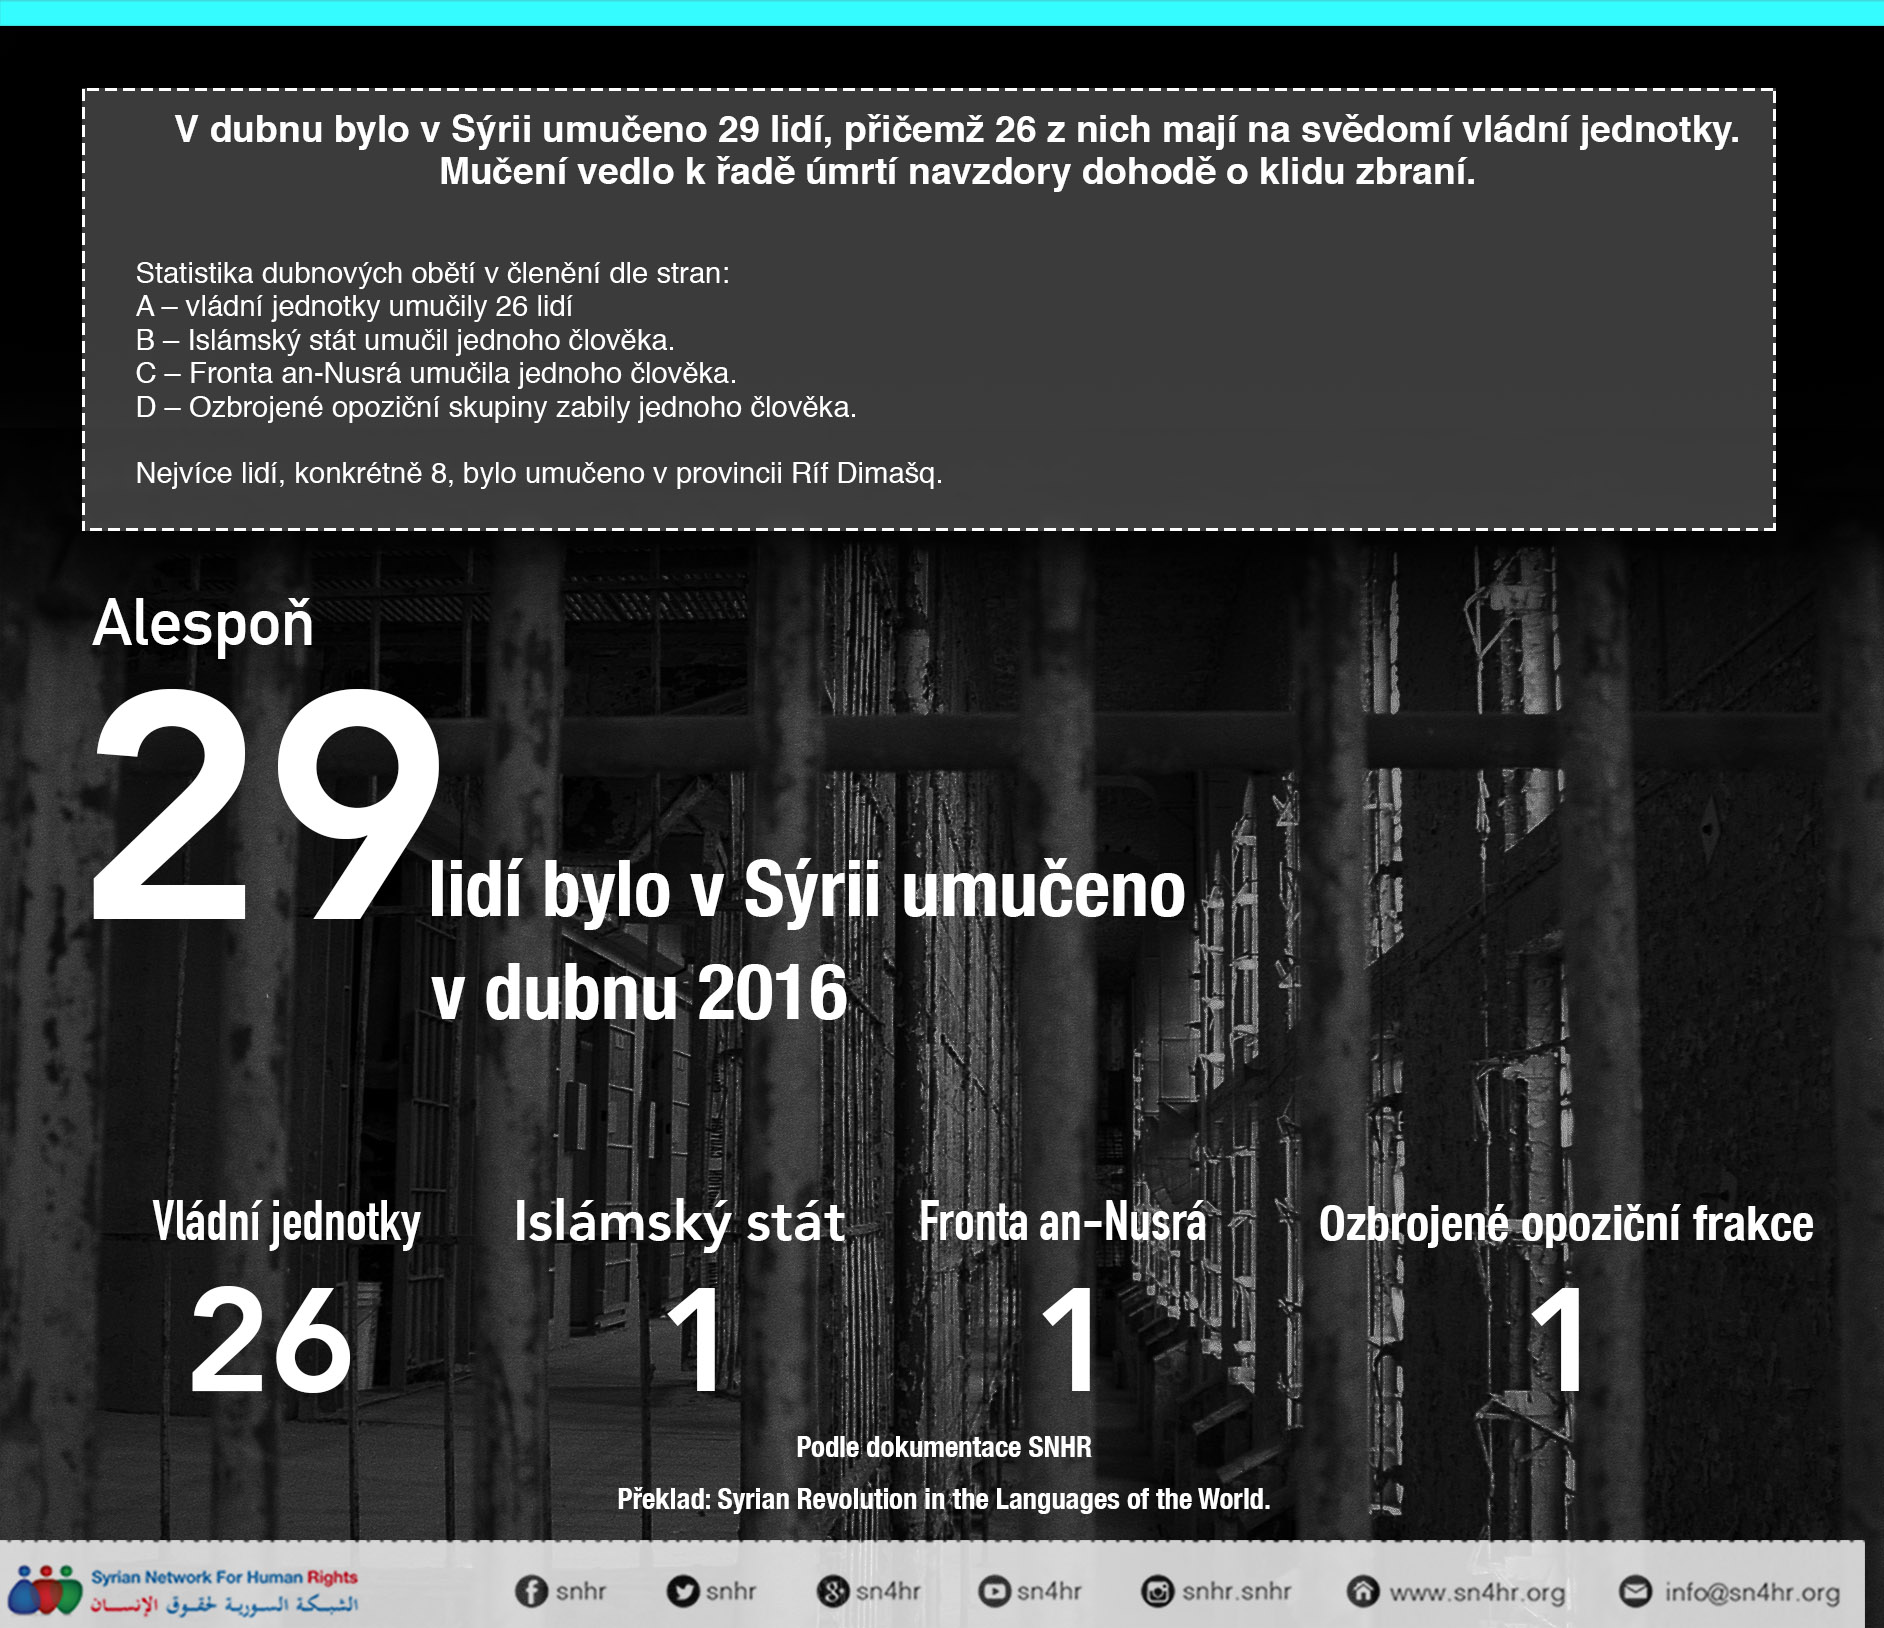 مقتل 29 شخصاً بسبب التعذيب في نيسان 2016 26 منهم على يد القوات الحكومية